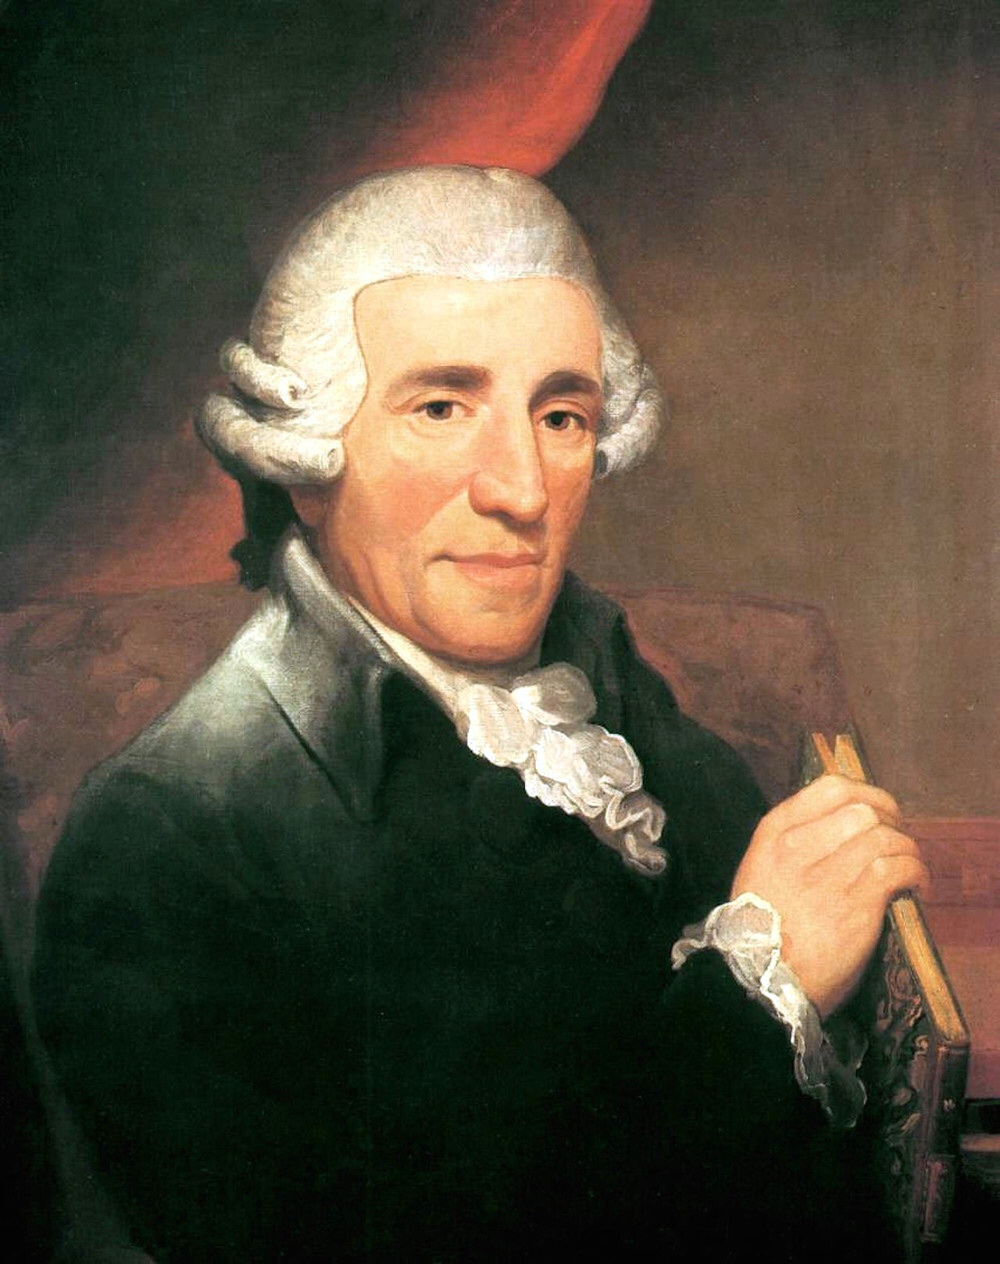 Haydn historiens luner | Publimus